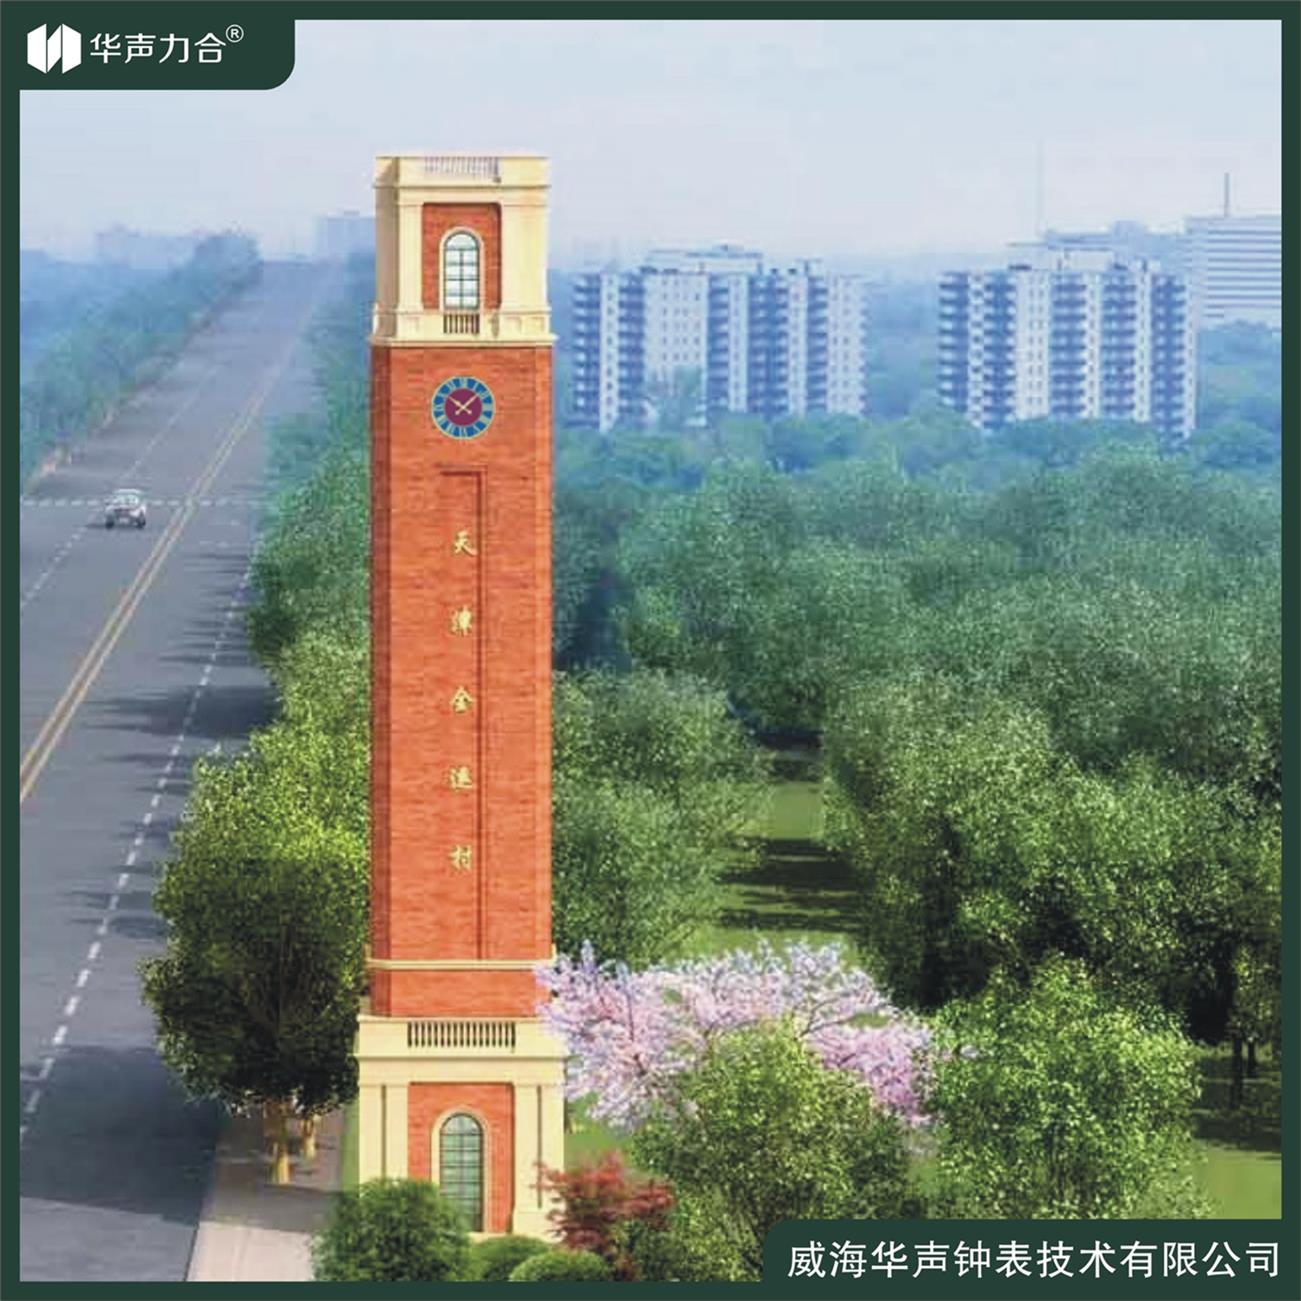 深圳环保型建筑钟 钟塔时钟